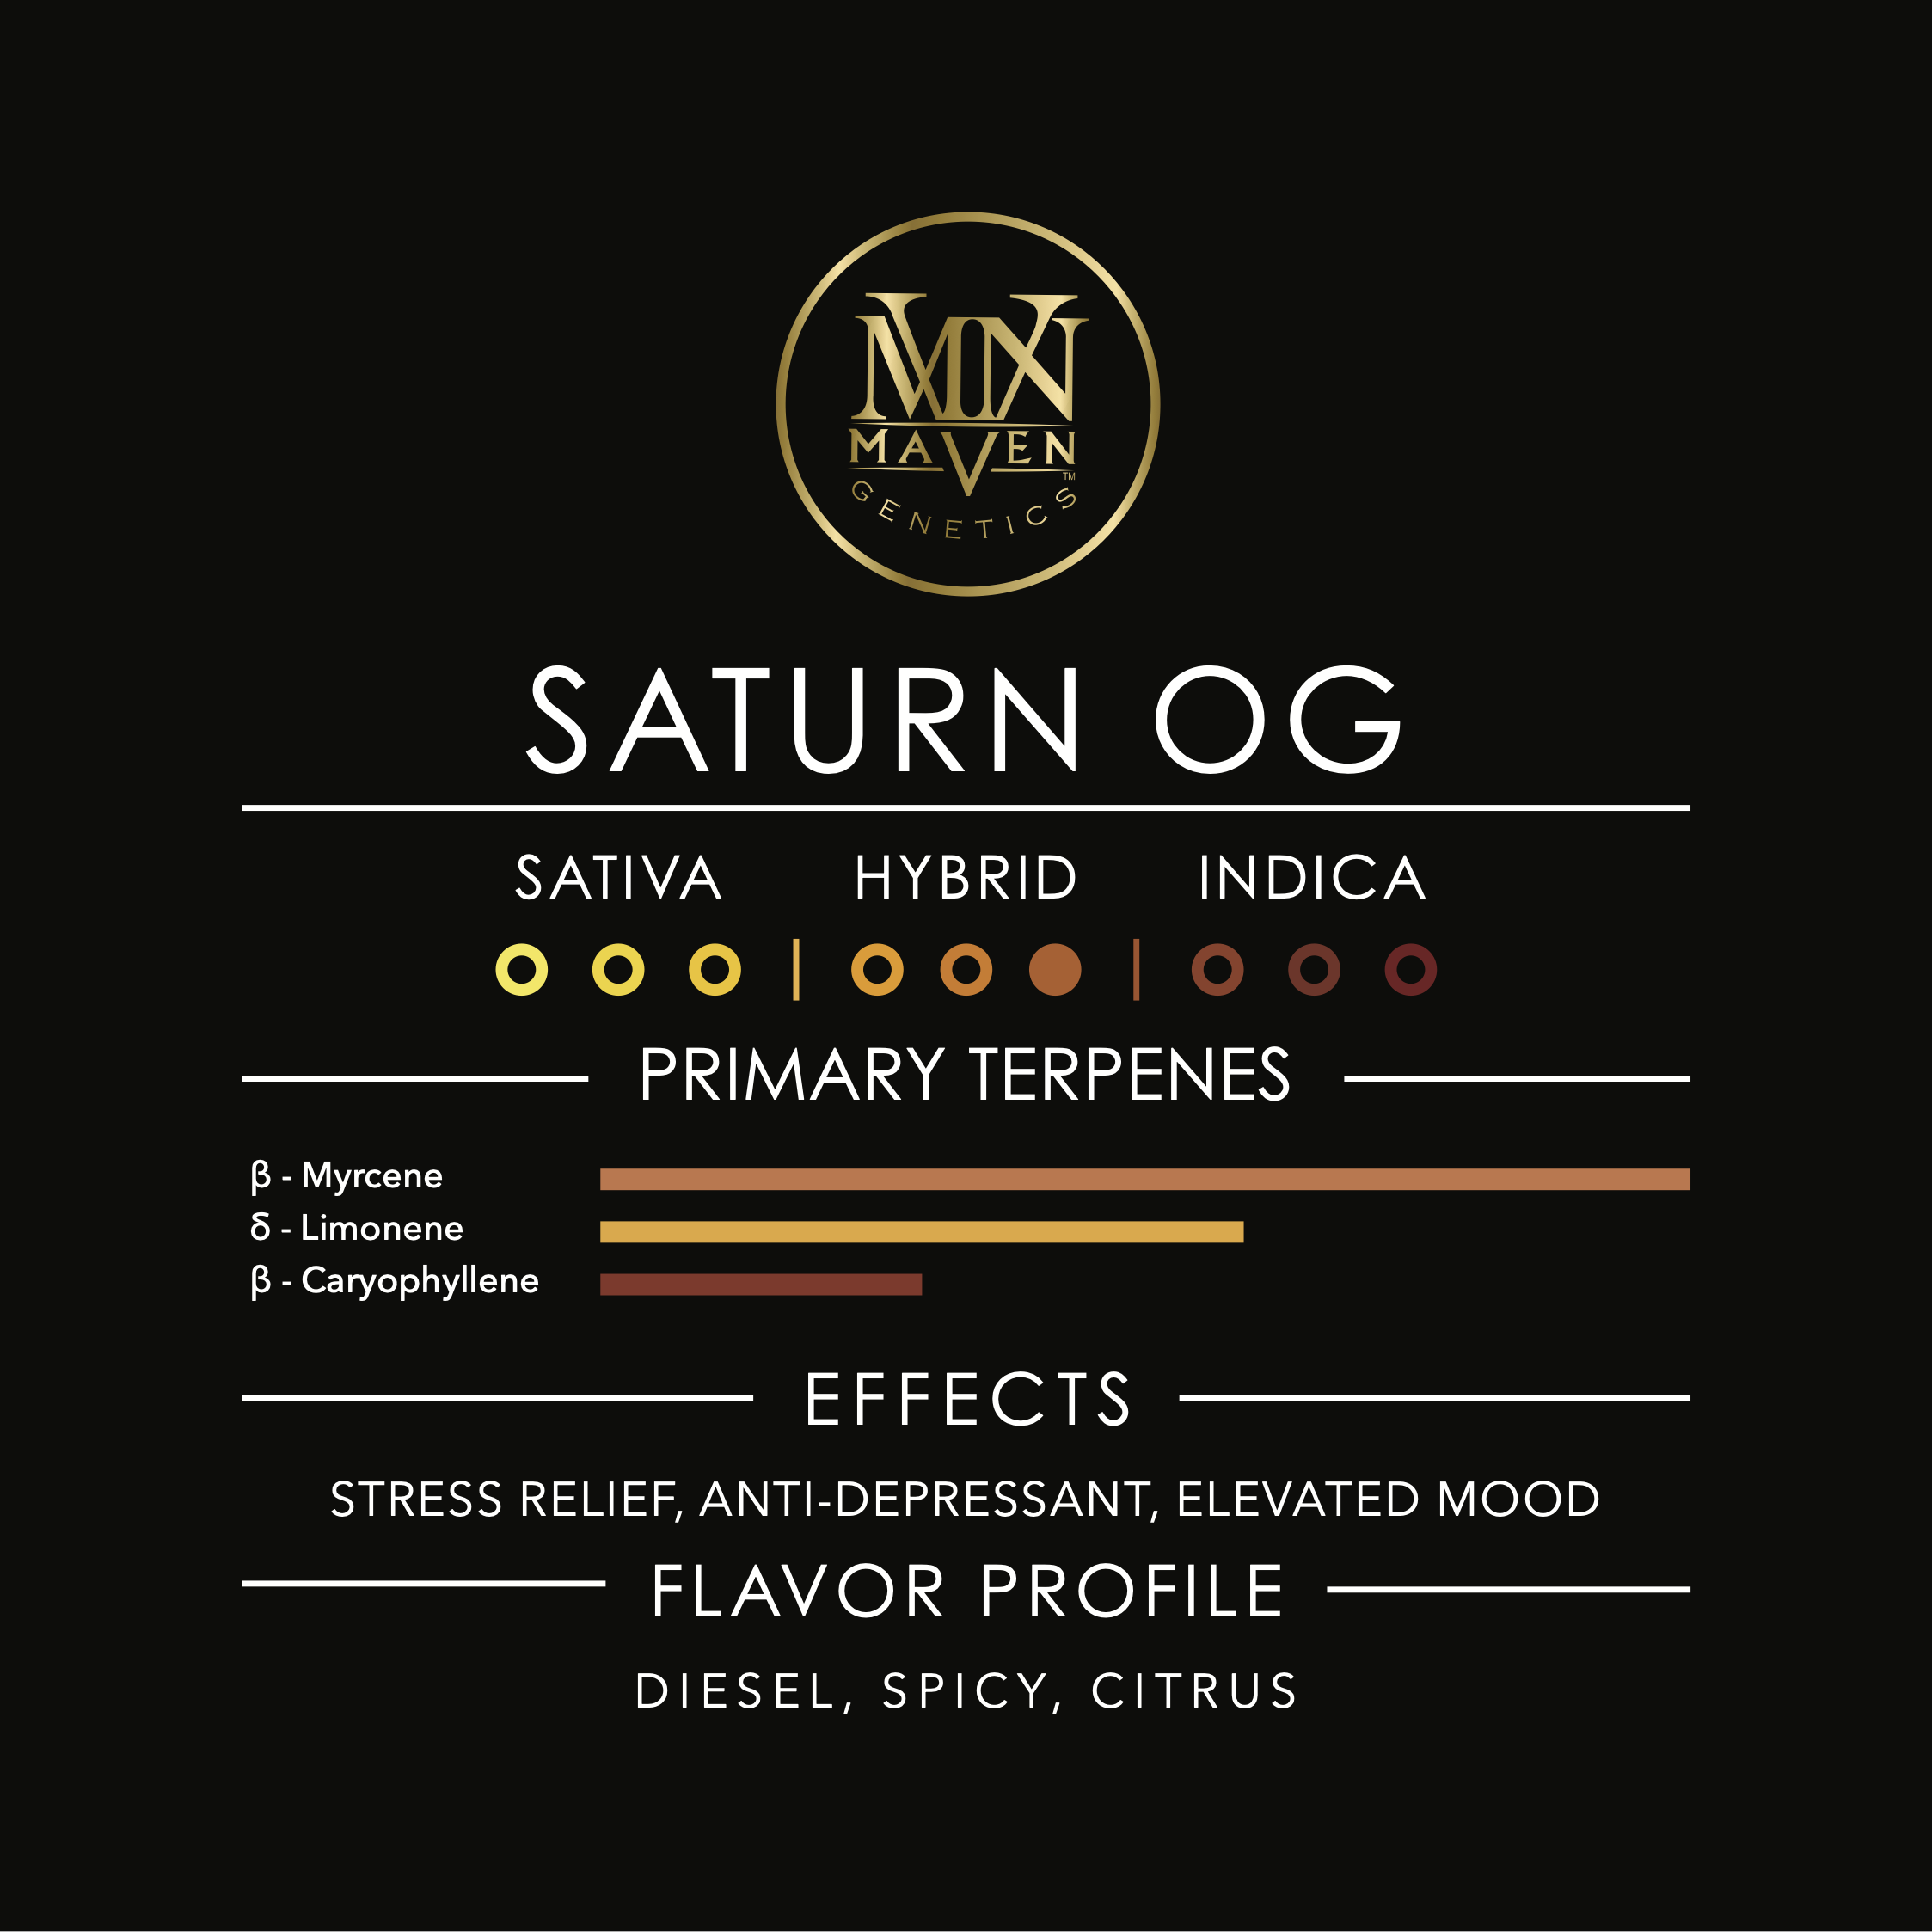 Saturn OG